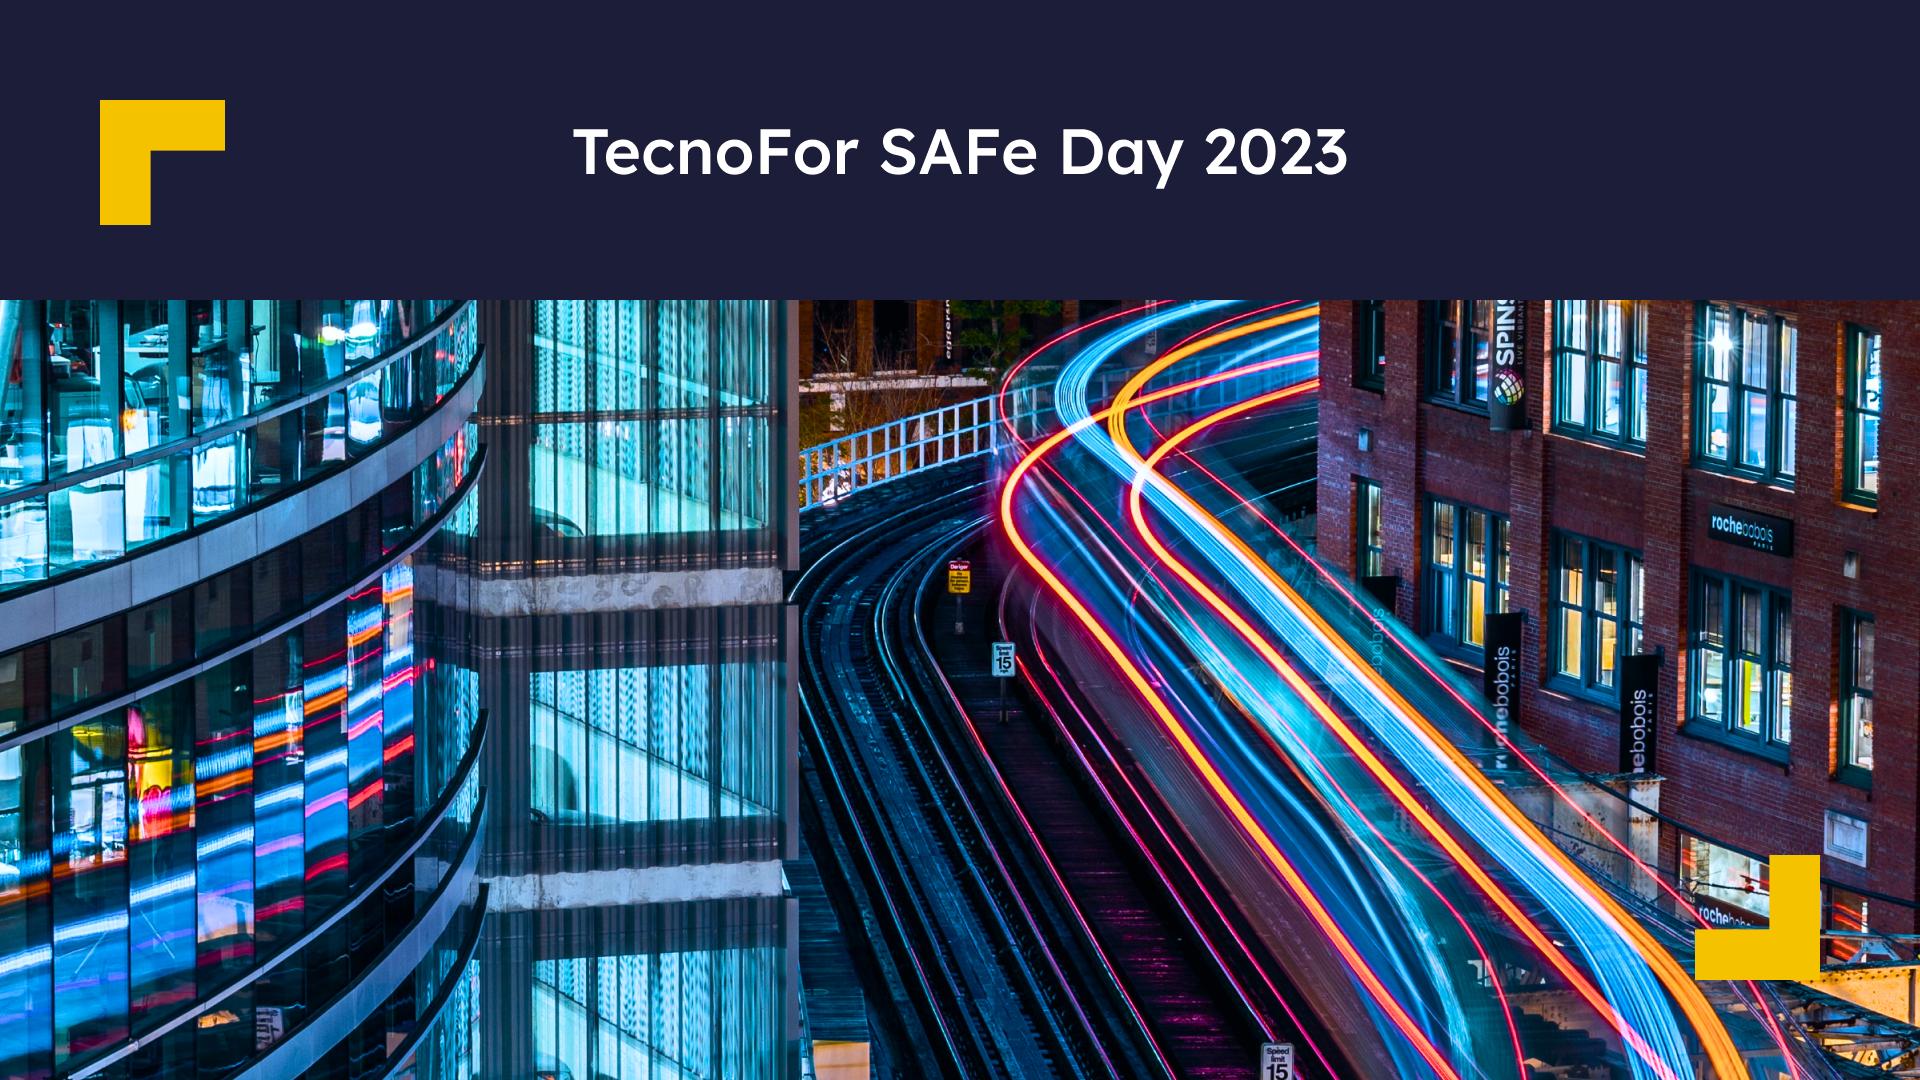 TecnoFor SAFe Day imagen destacada blog